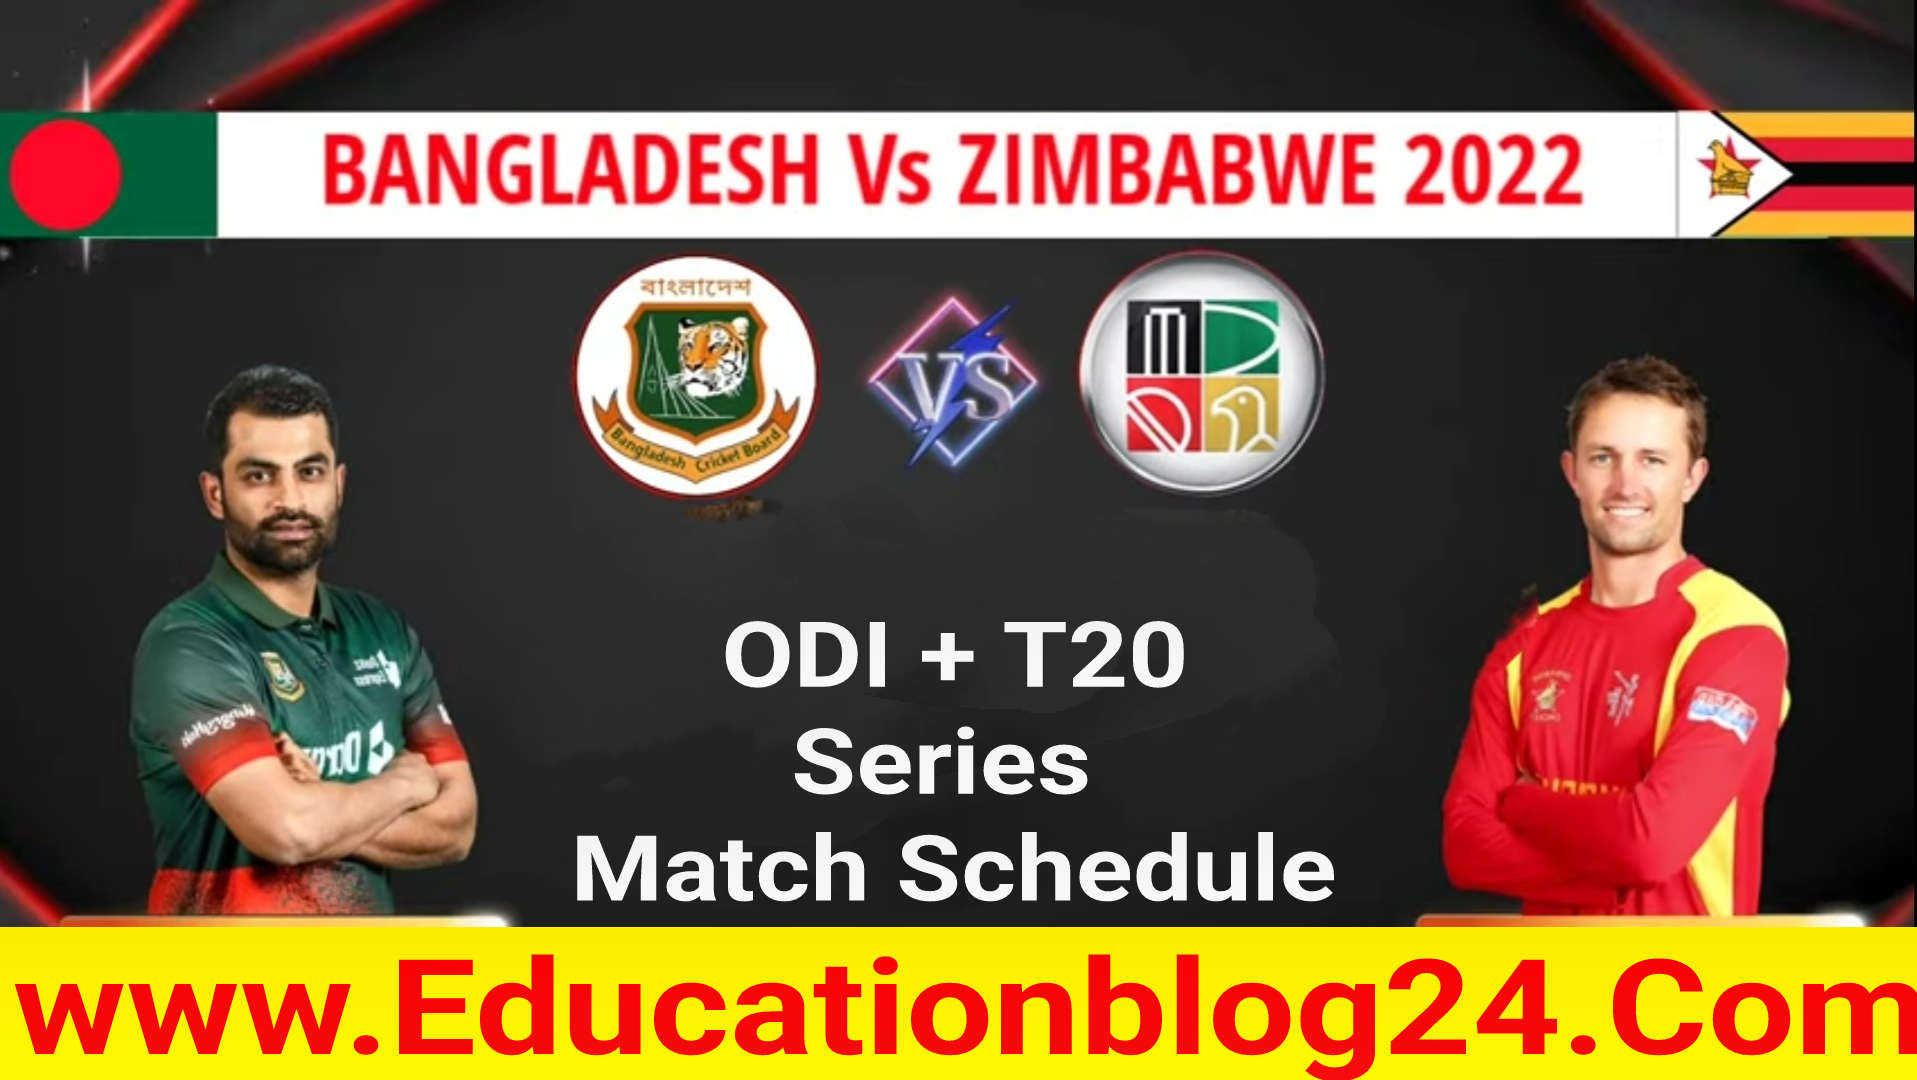 বাংলাদেশ জিম্বাবুয়ে সিরিজের সময়সূচি 2022 | বাংলাদেশ বনাম জিম্বাবুয়ে খেলার সময় সূচি ২০২২ | Bangladesh vs zimbabwe 2022 odi,T20 Schedule